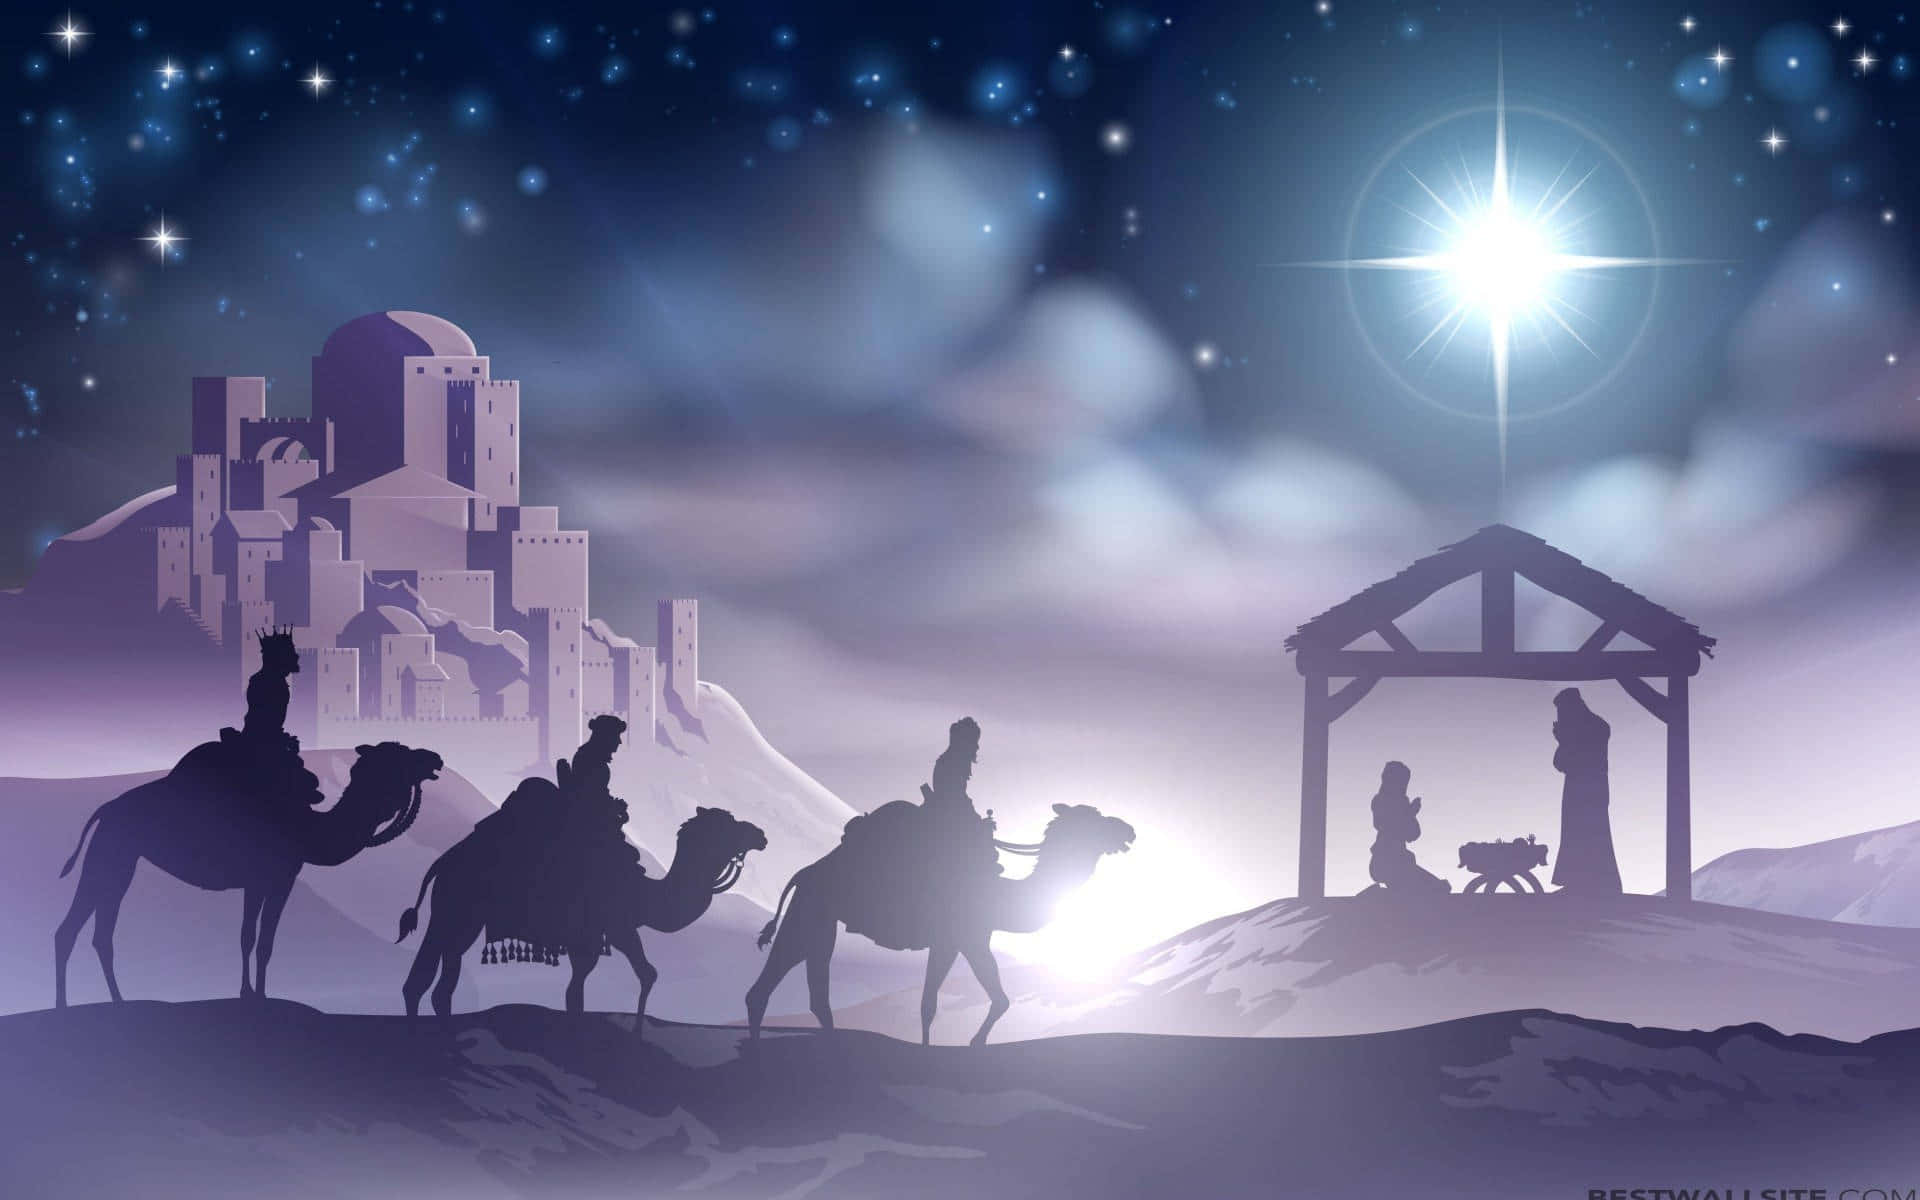 Billedeaf Krybbescenen Der Fejrer Jesu Fødsel.